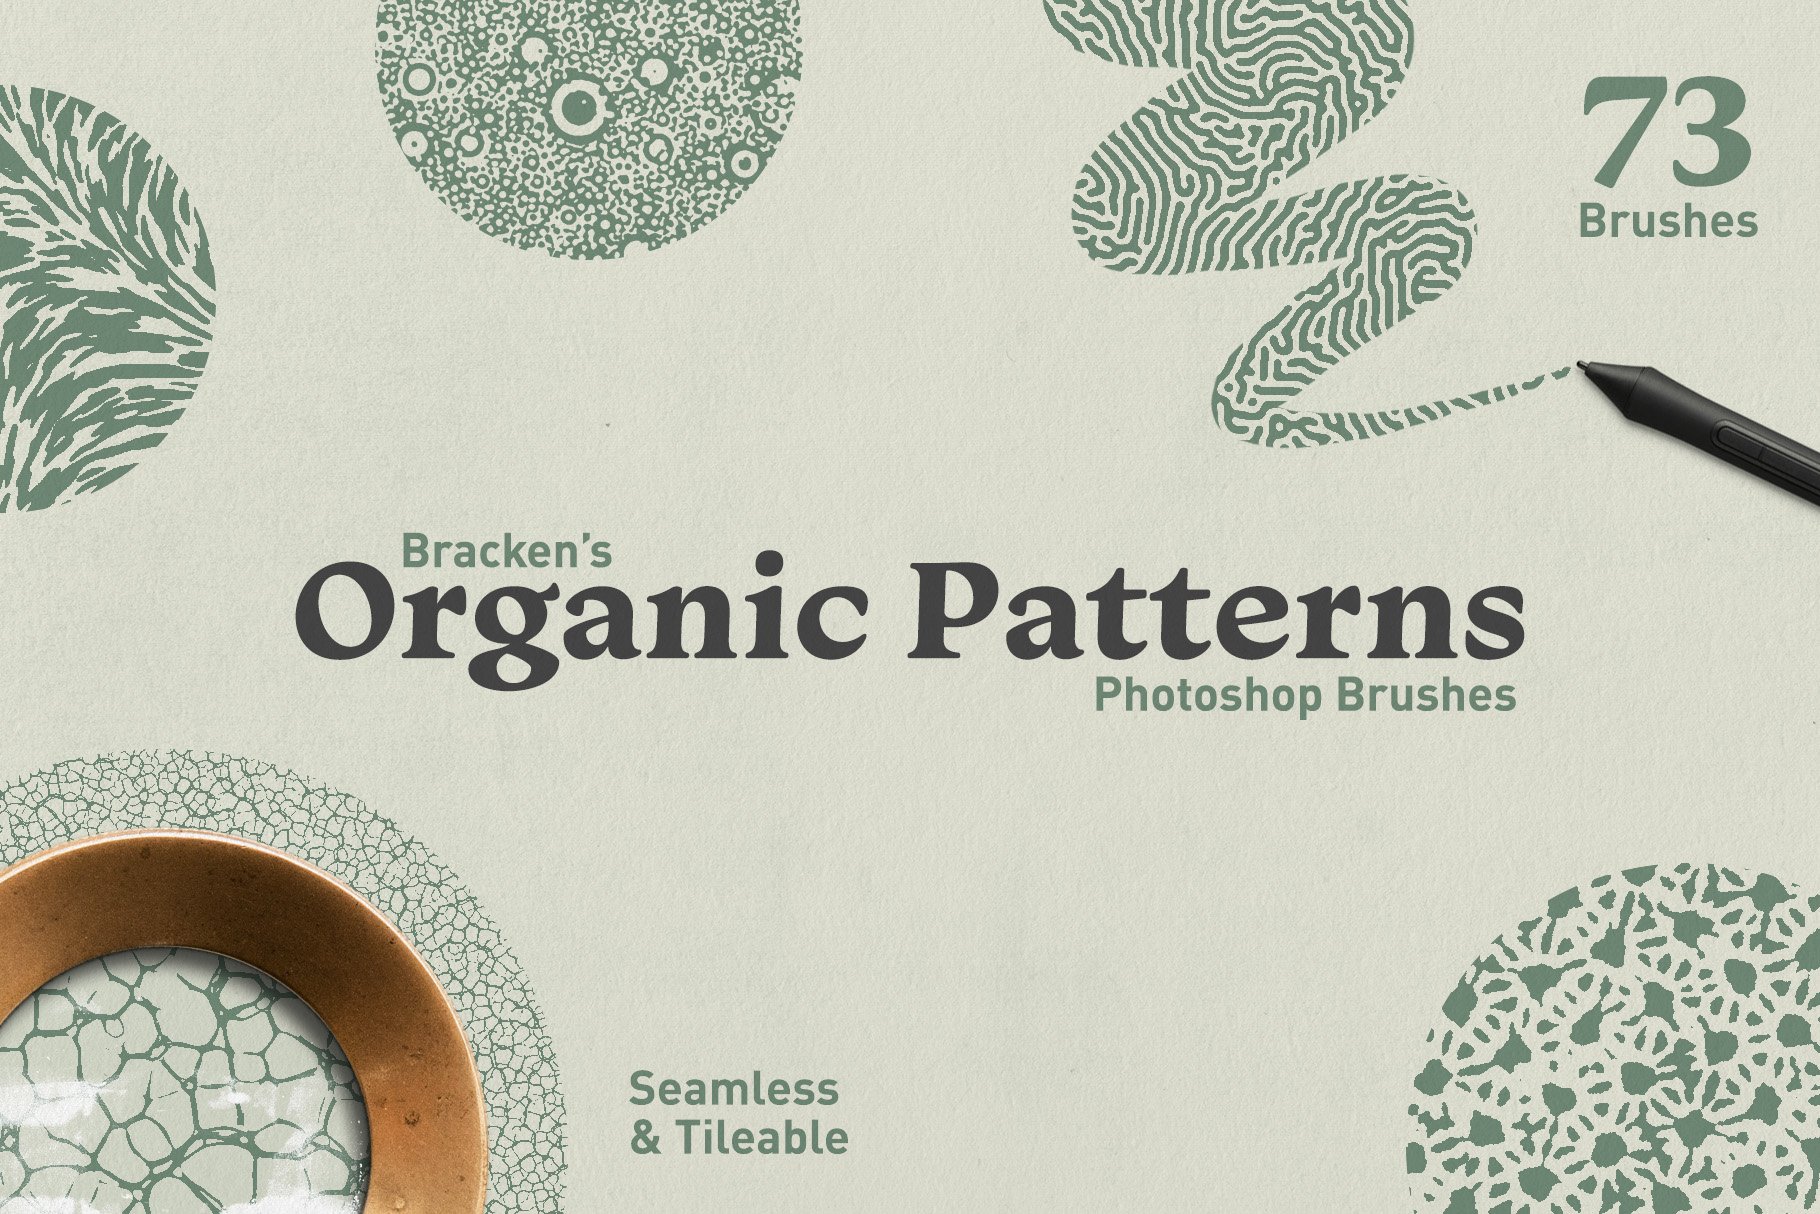 Organic Patterns - Photoshop Brushescover image.